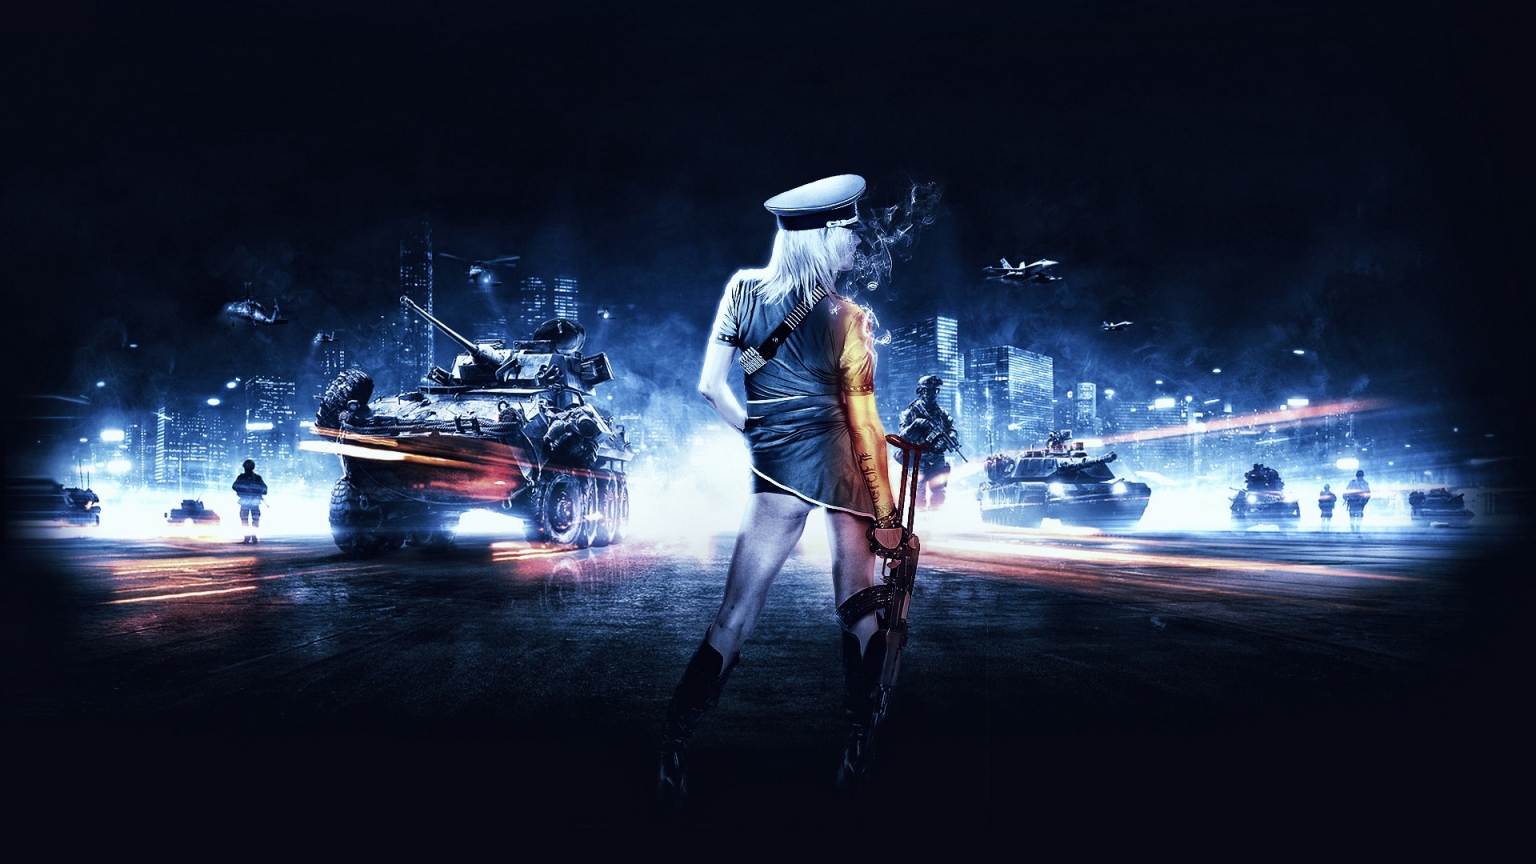 Battlefield 3 Girl for 1536 x 864 HDTV resolution